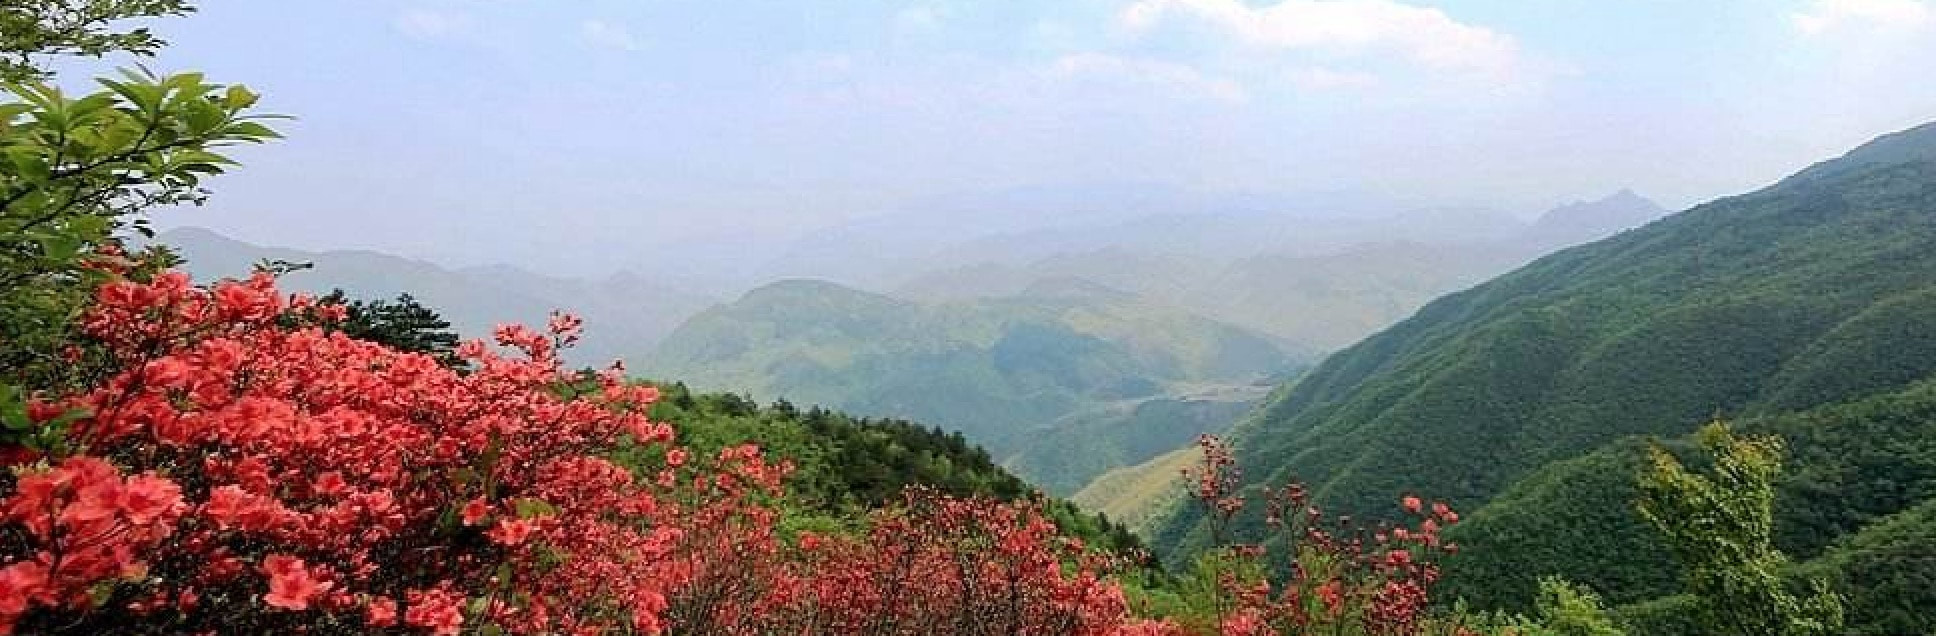 hiking, forest, mountains, zhejiang